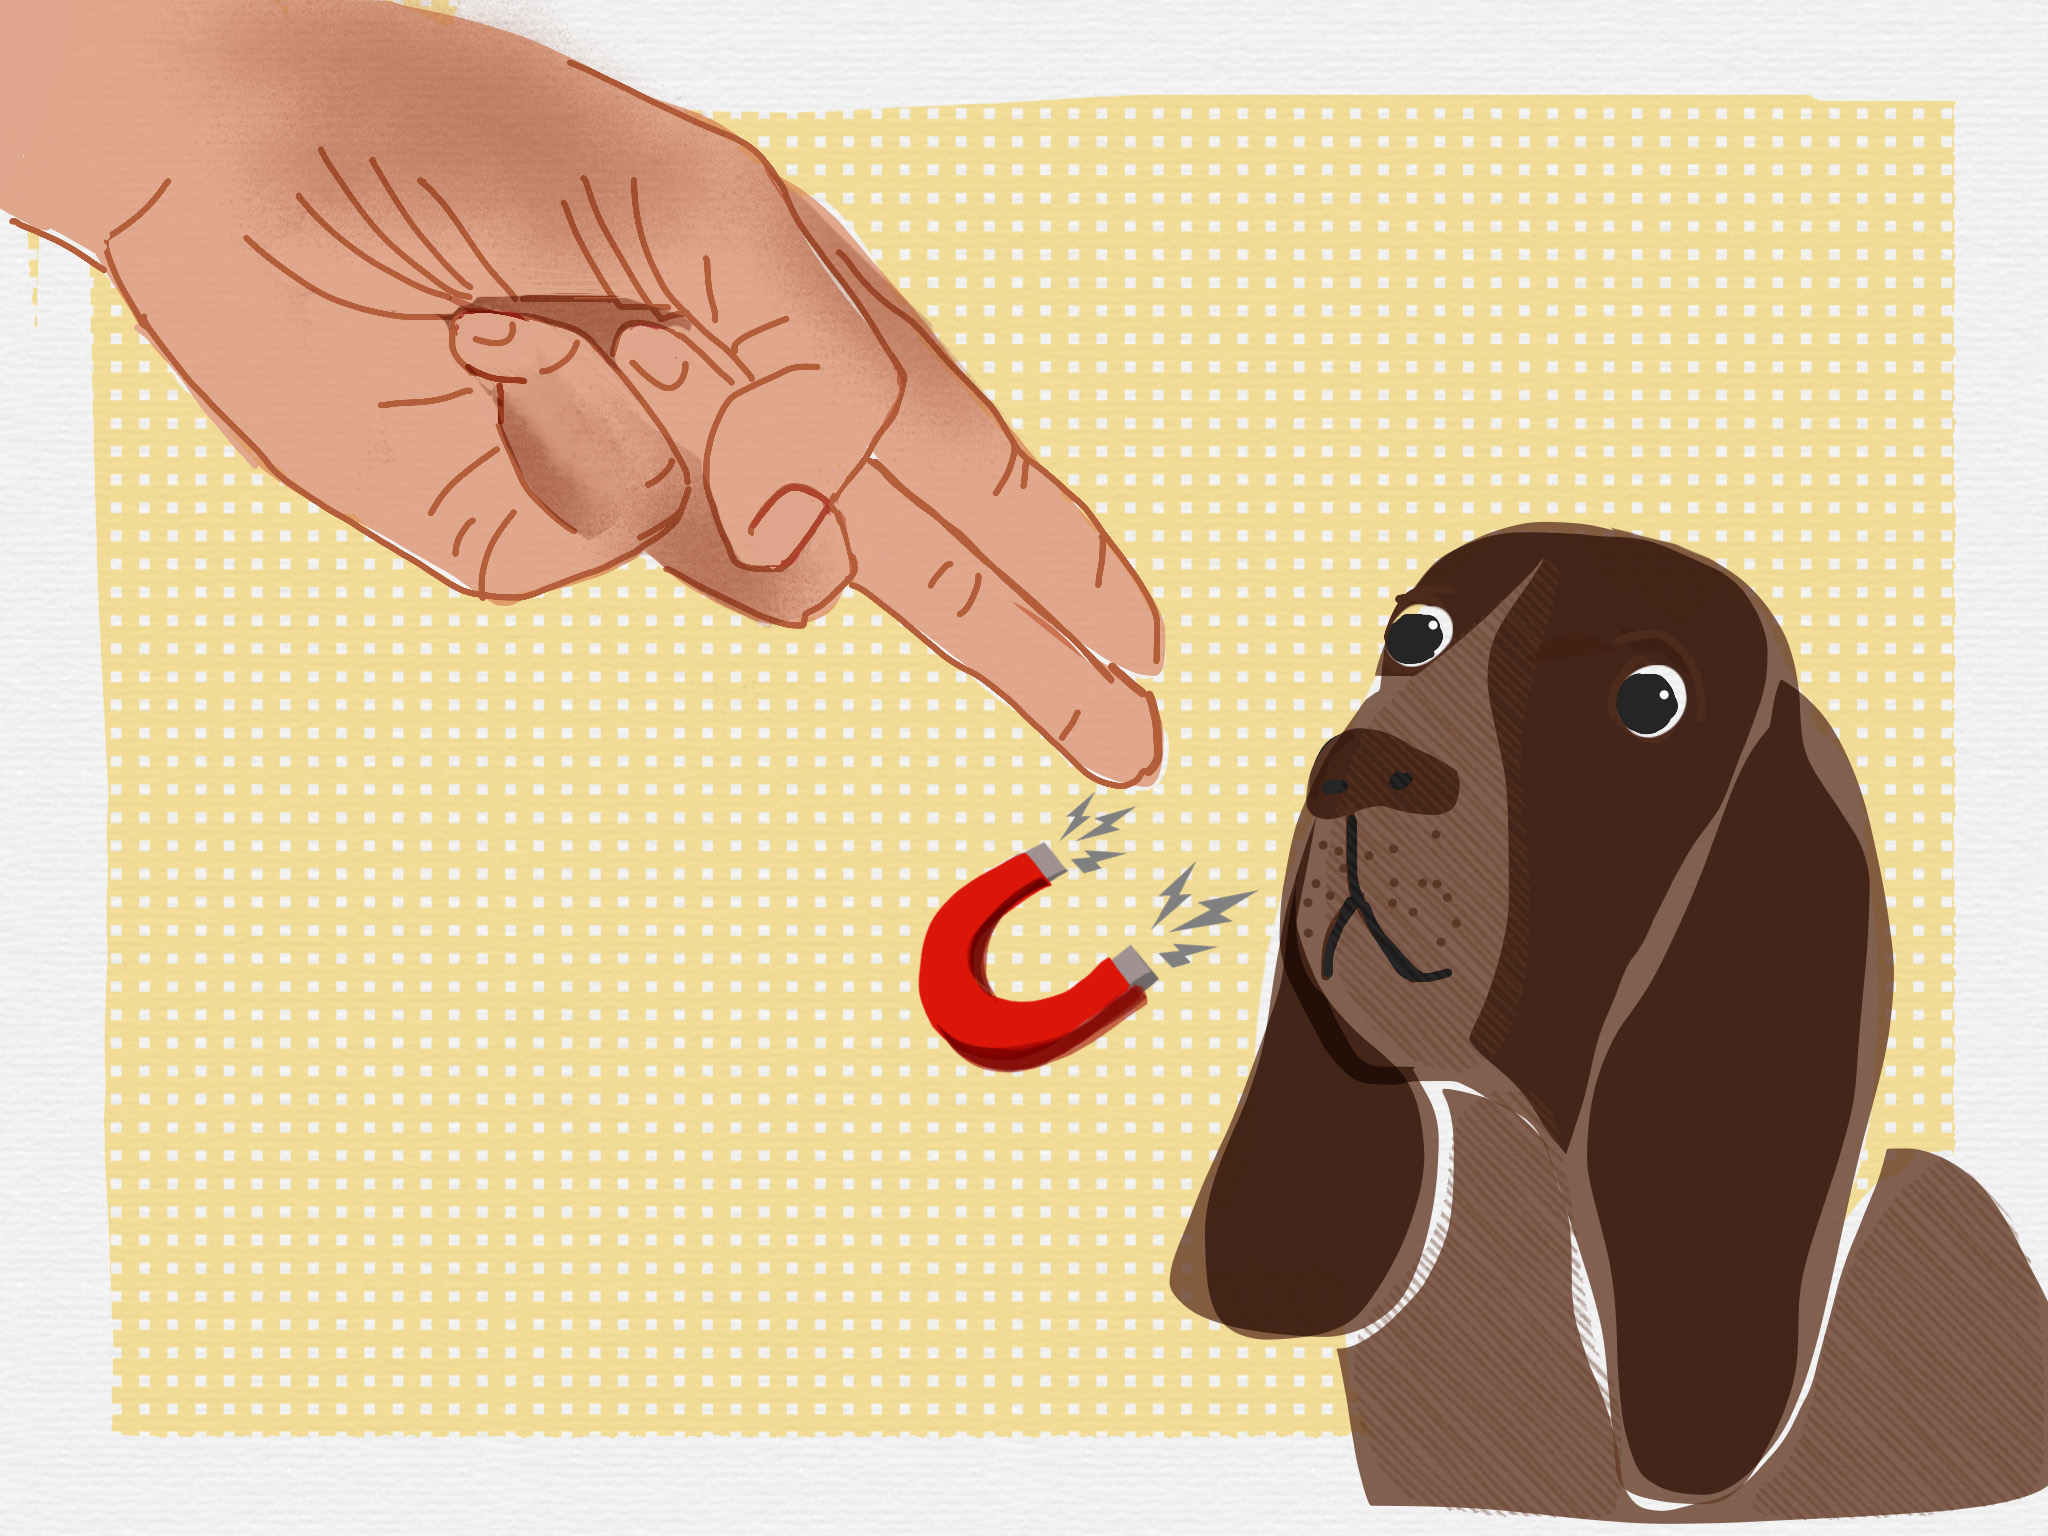 dog training illustration annie grossman